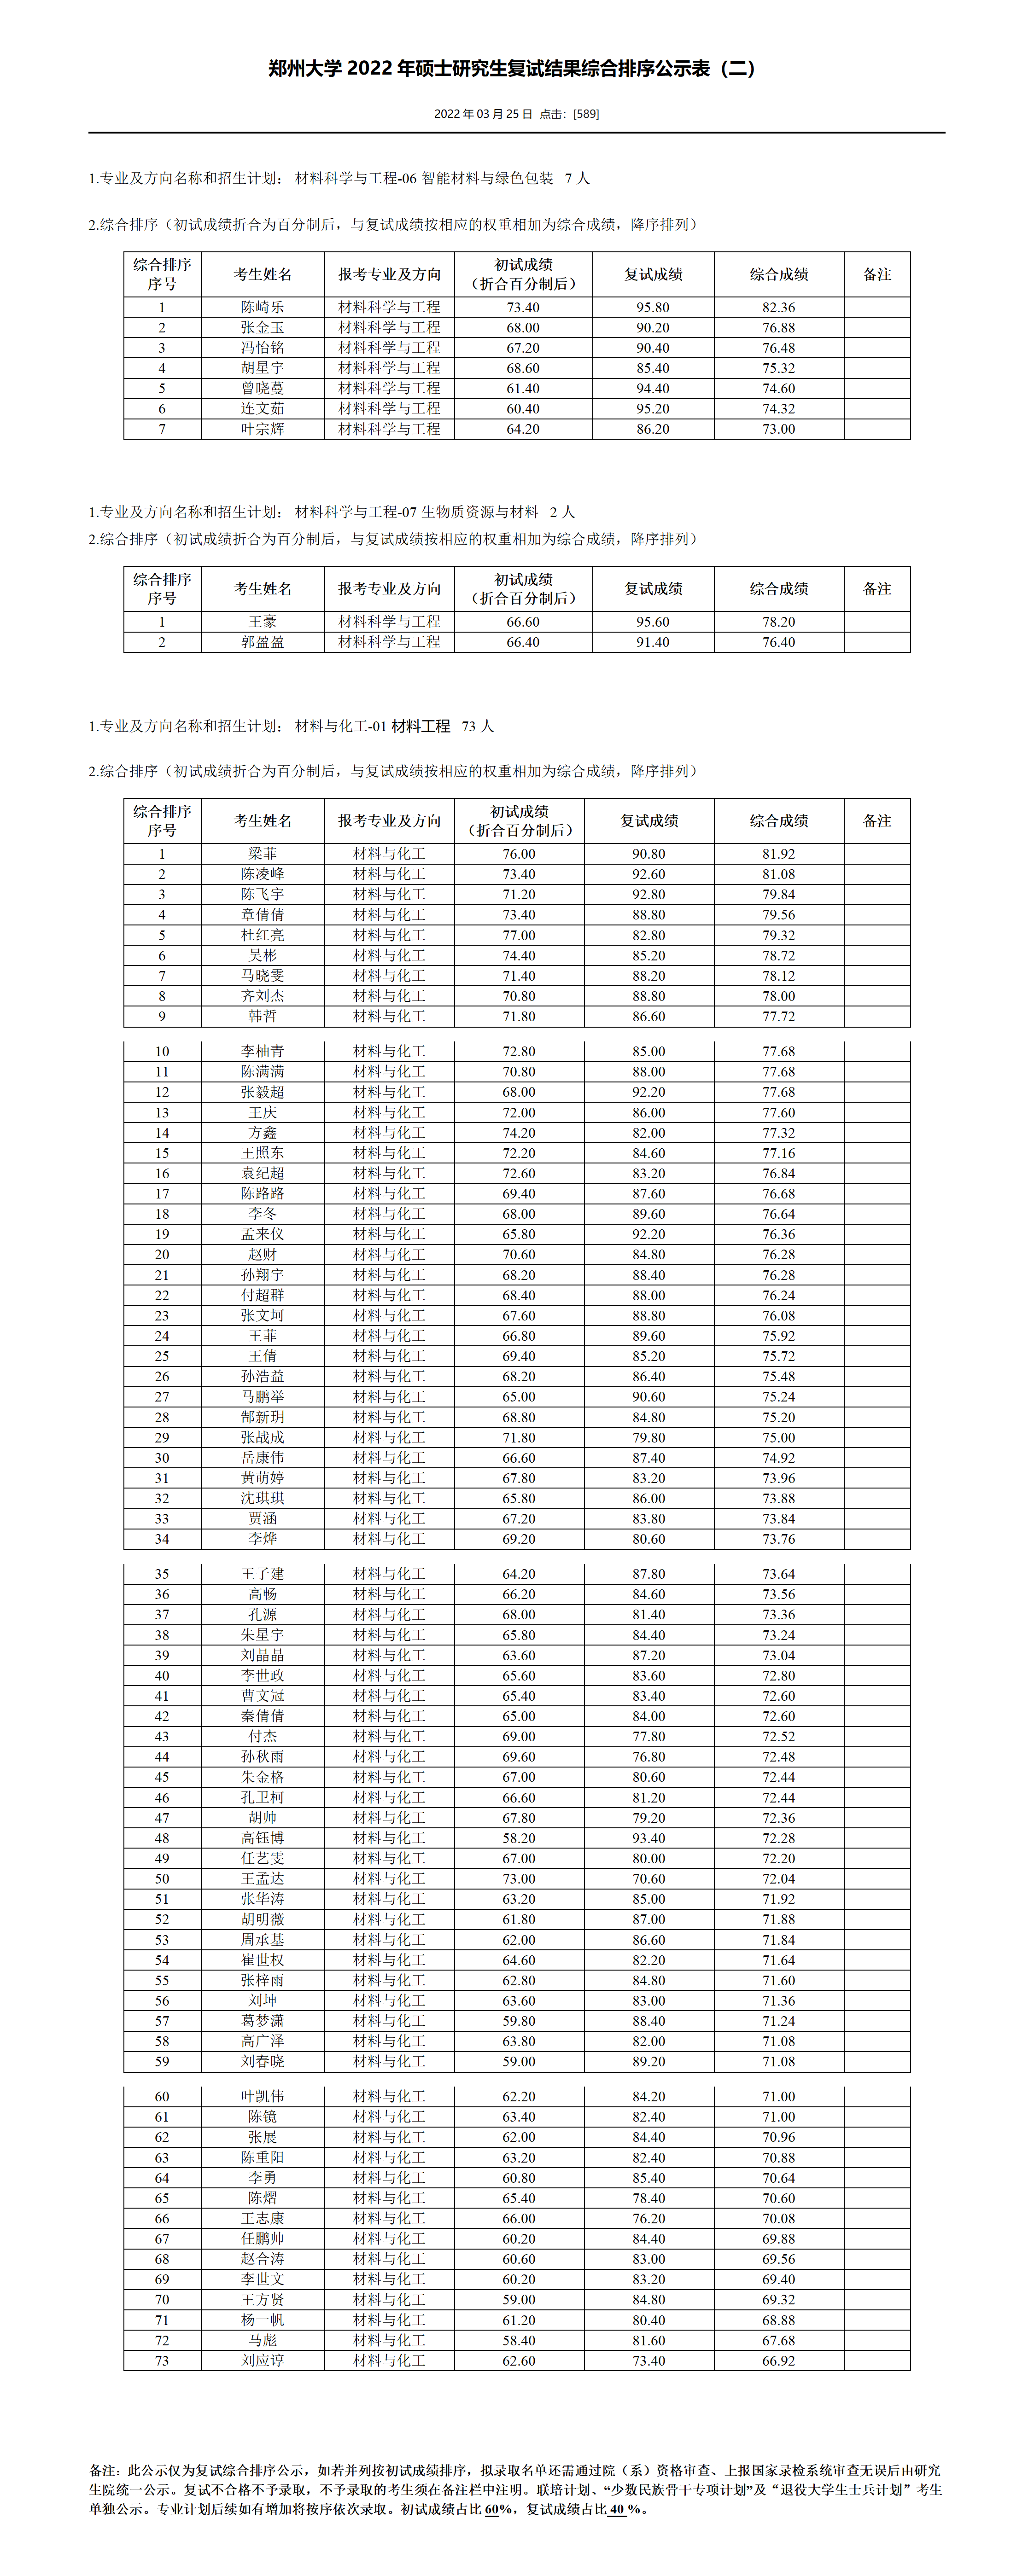 郑州大学2022年硕士研究生复试结果综合排序公示表（二）_01.png